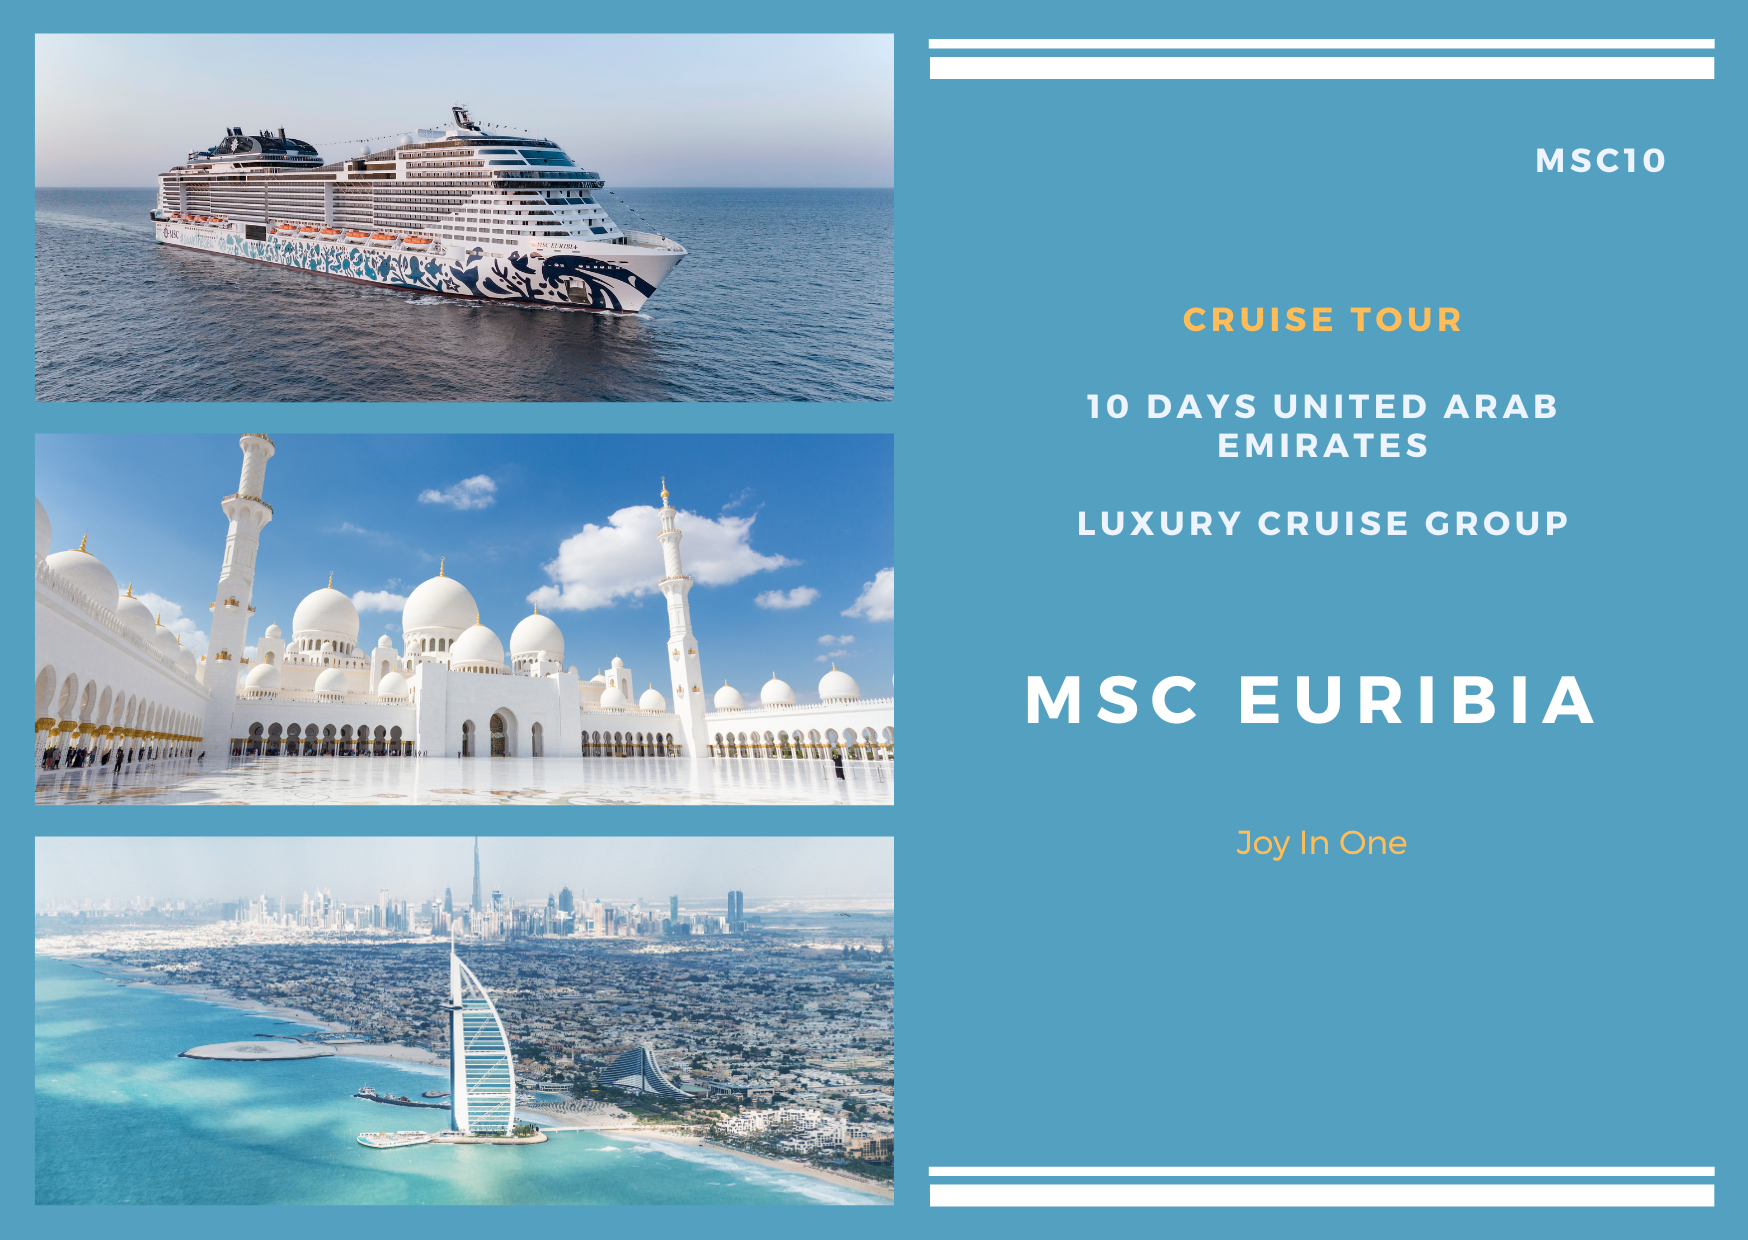 ### 10 days United Arab Emirates MSC Euribia Luxury Cruise Tour (MSC10)